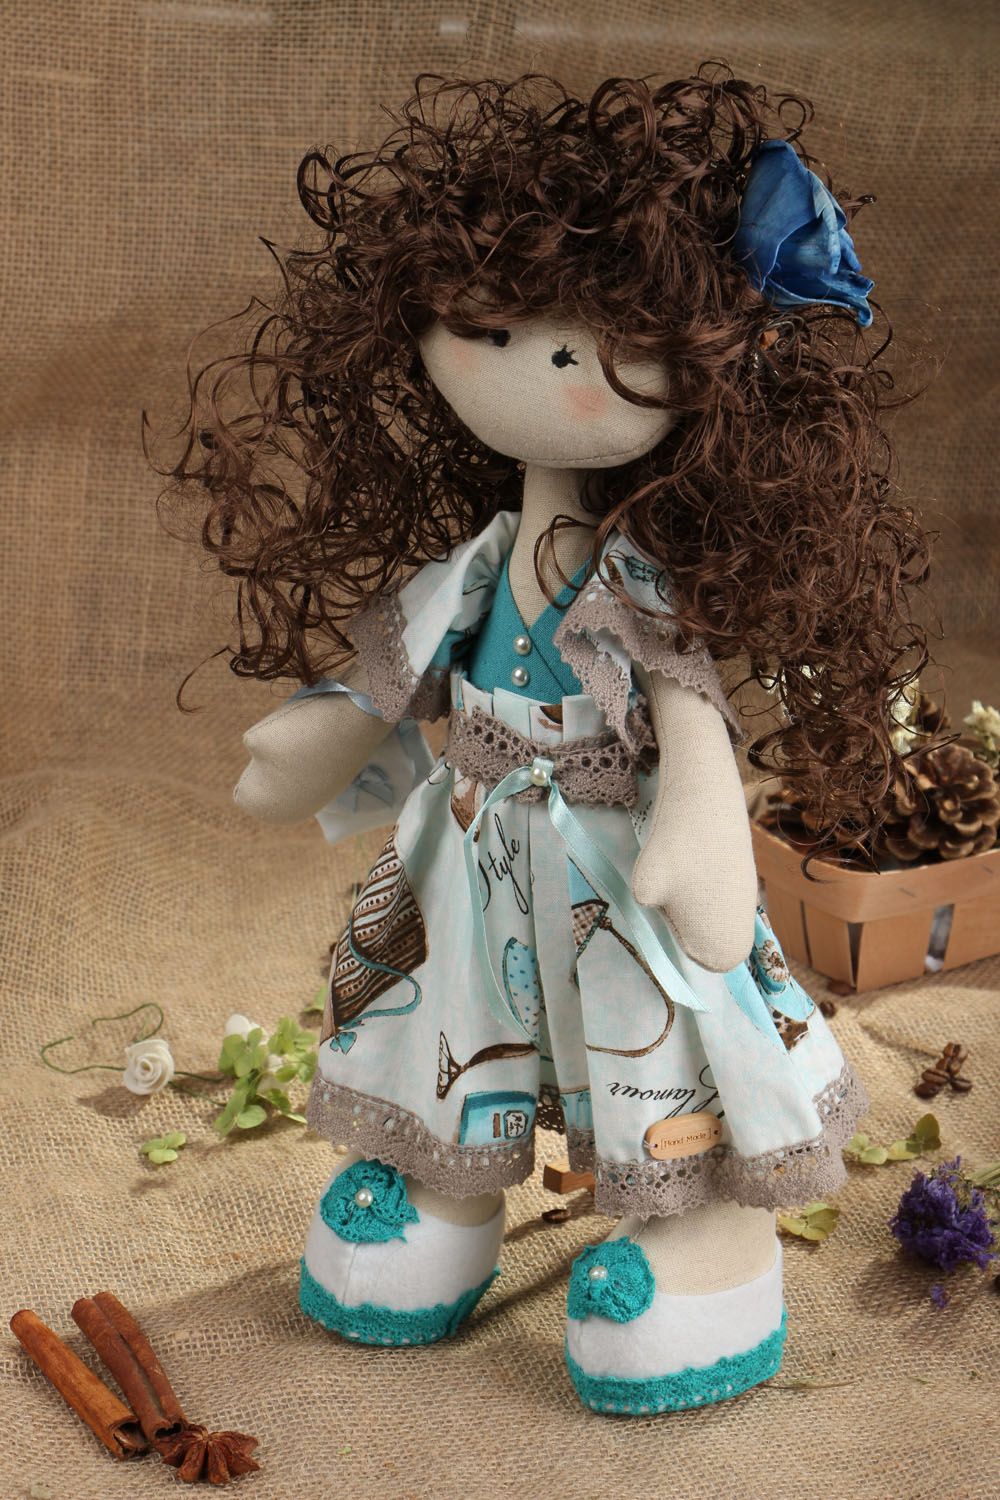 Textil Puppe Dekor im blauen Kleid foto 5